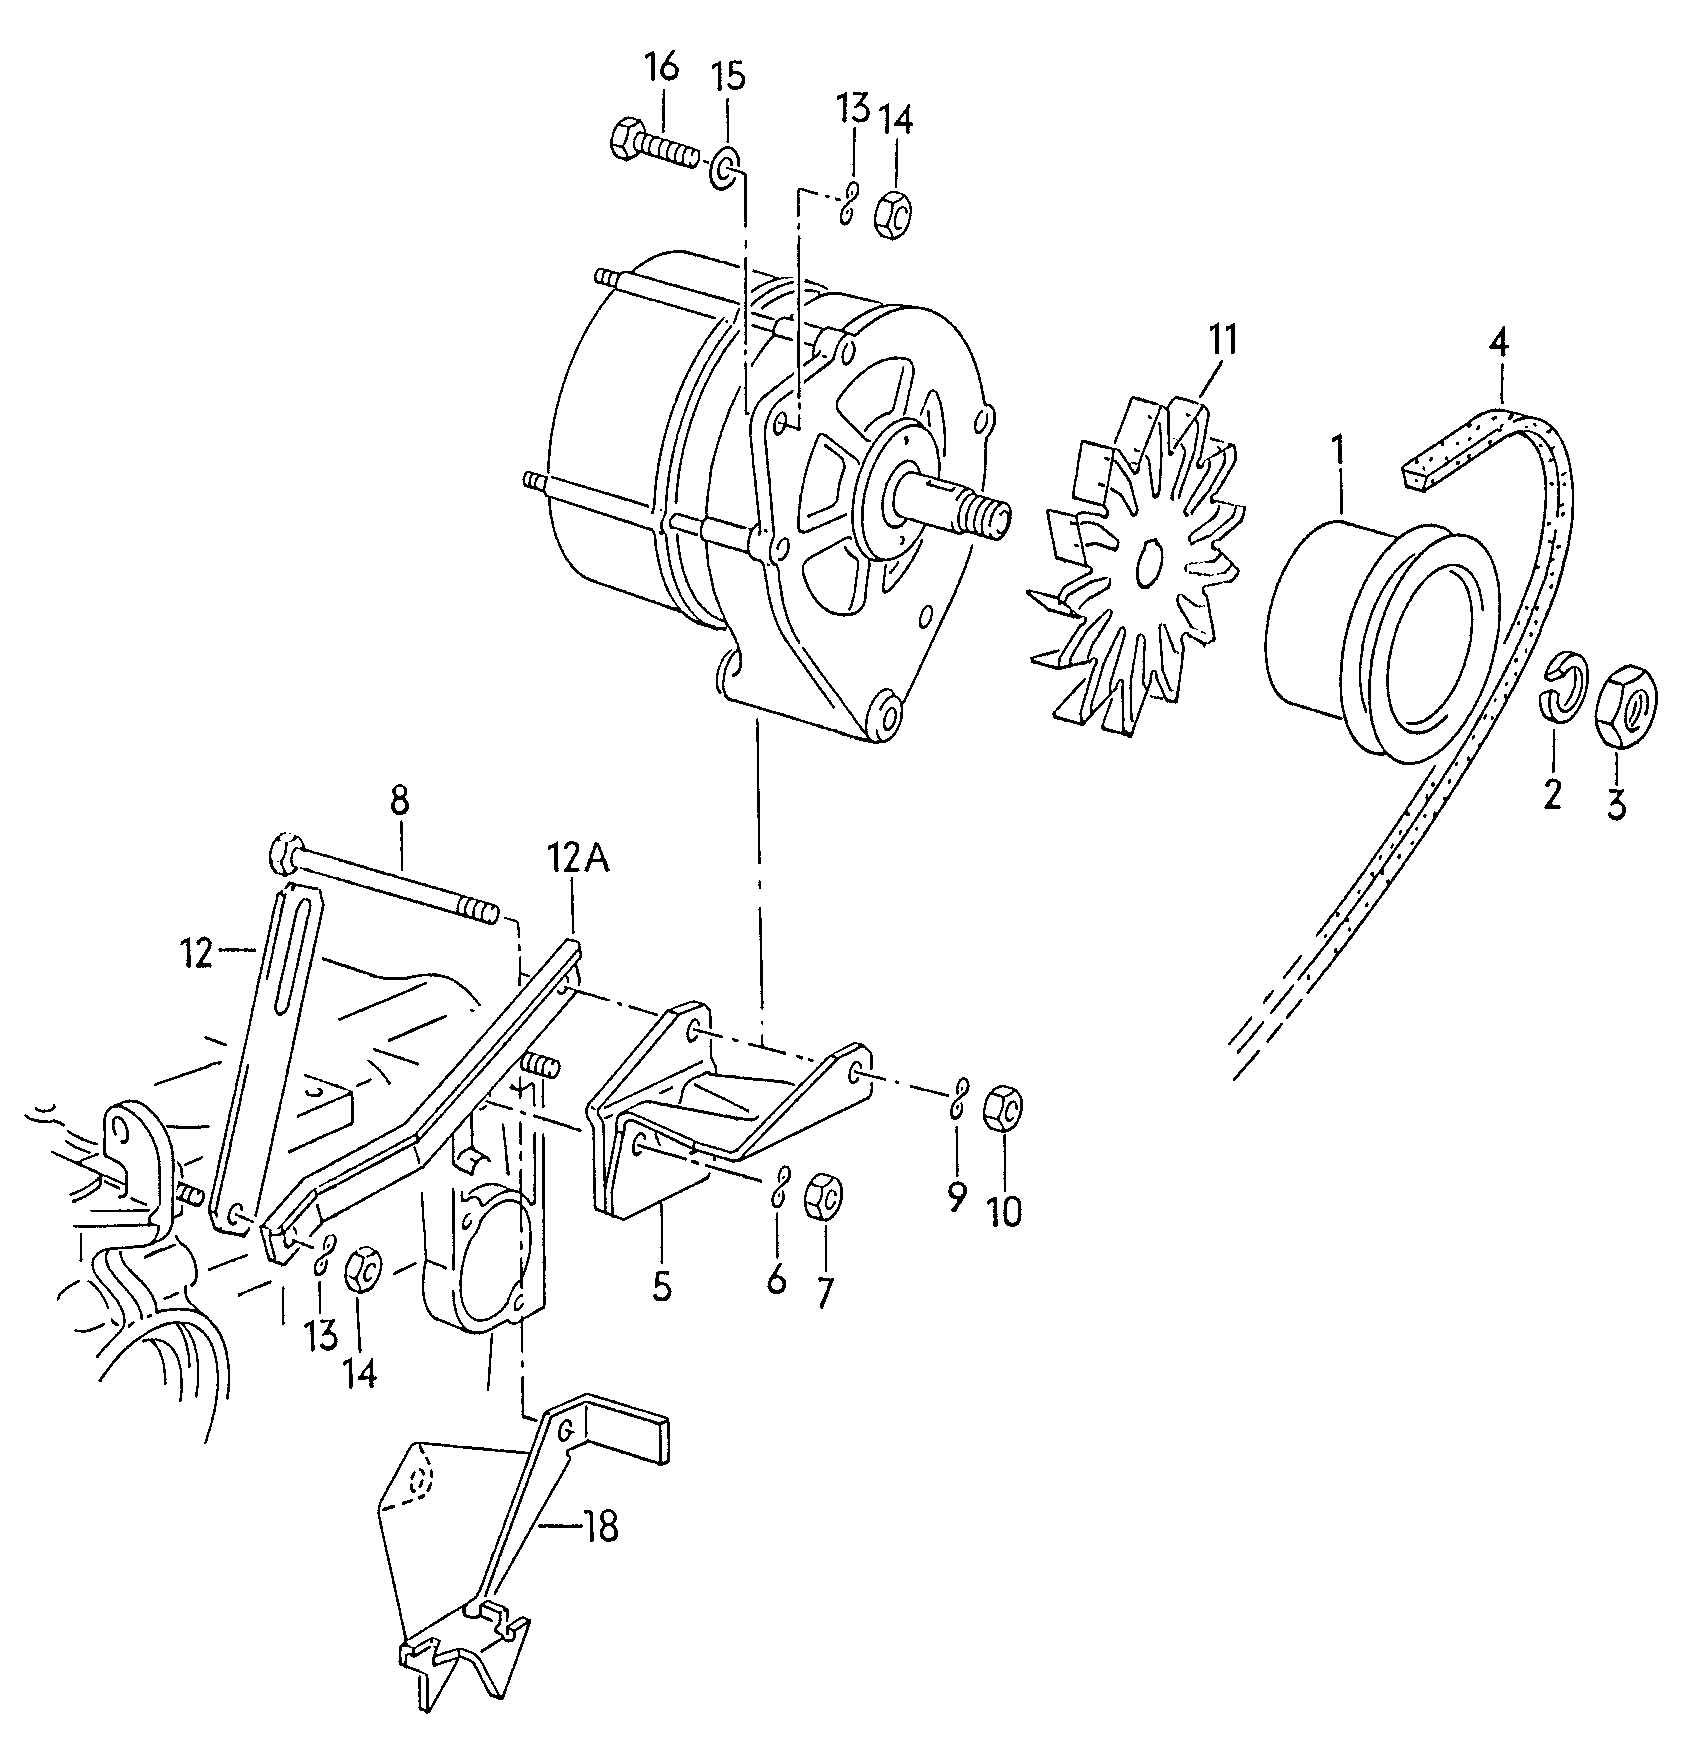 Befestigungsteile fuer Dreh-
stromgenerator - Typ 2/syncro(T2)  